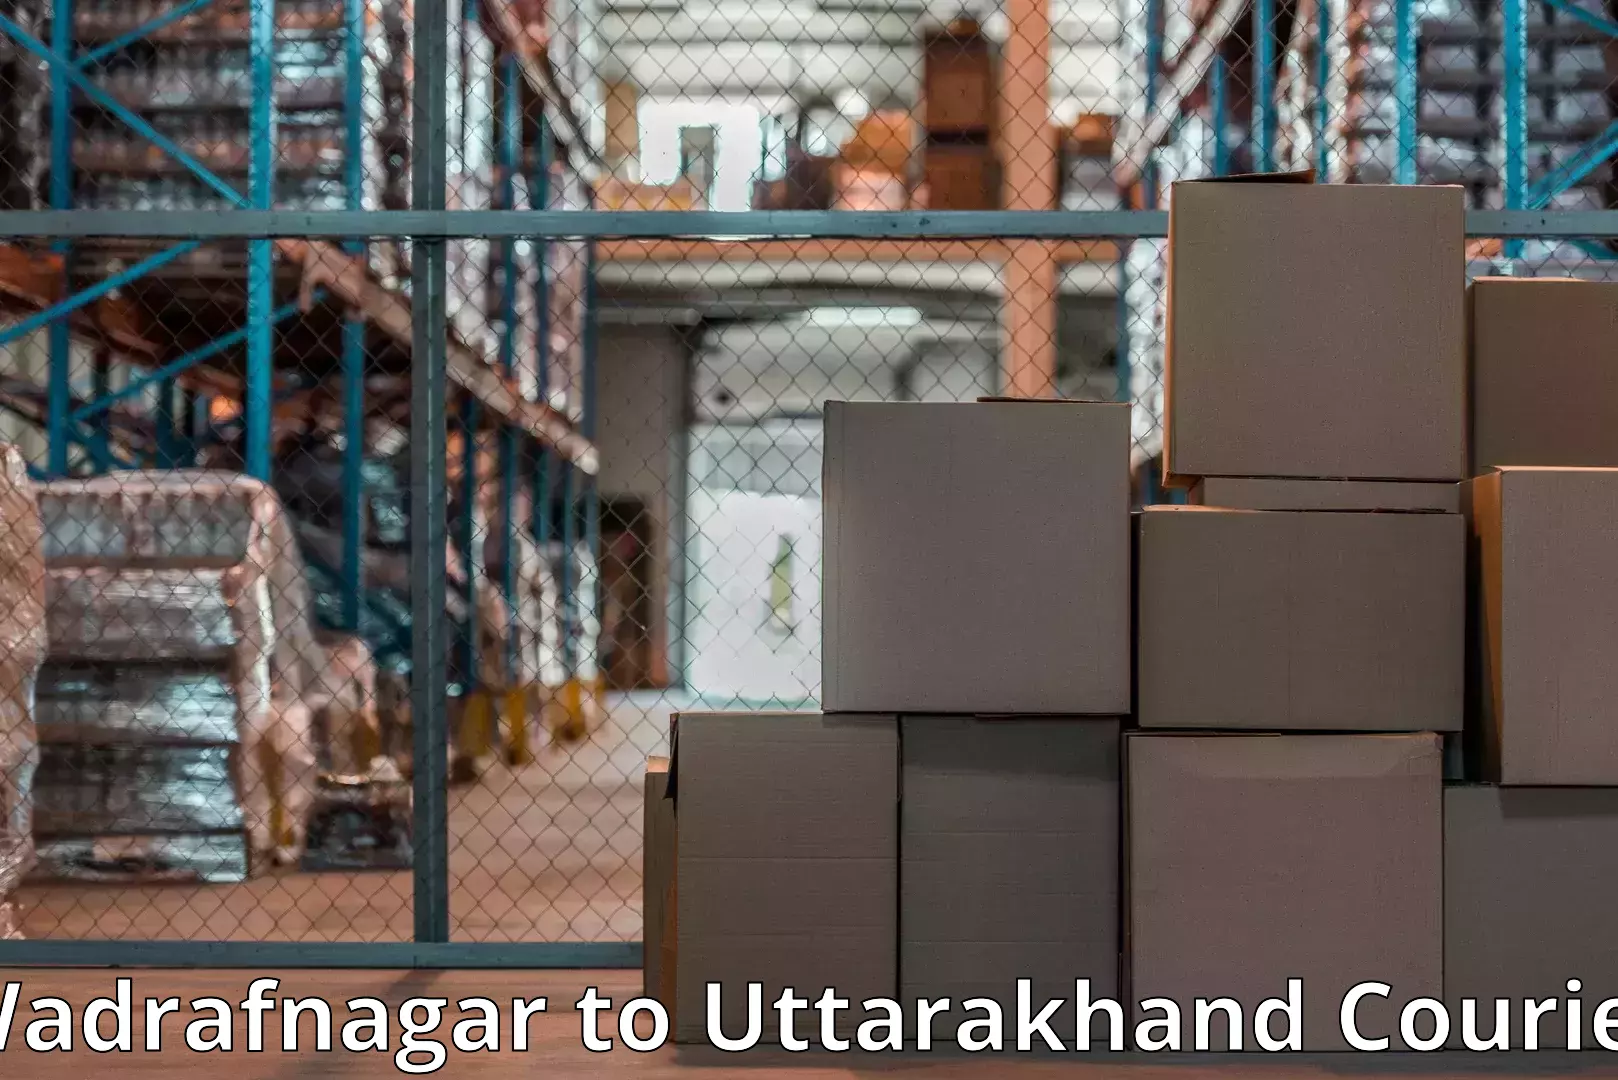 Quality moving company Wadrafnagar to Tehri